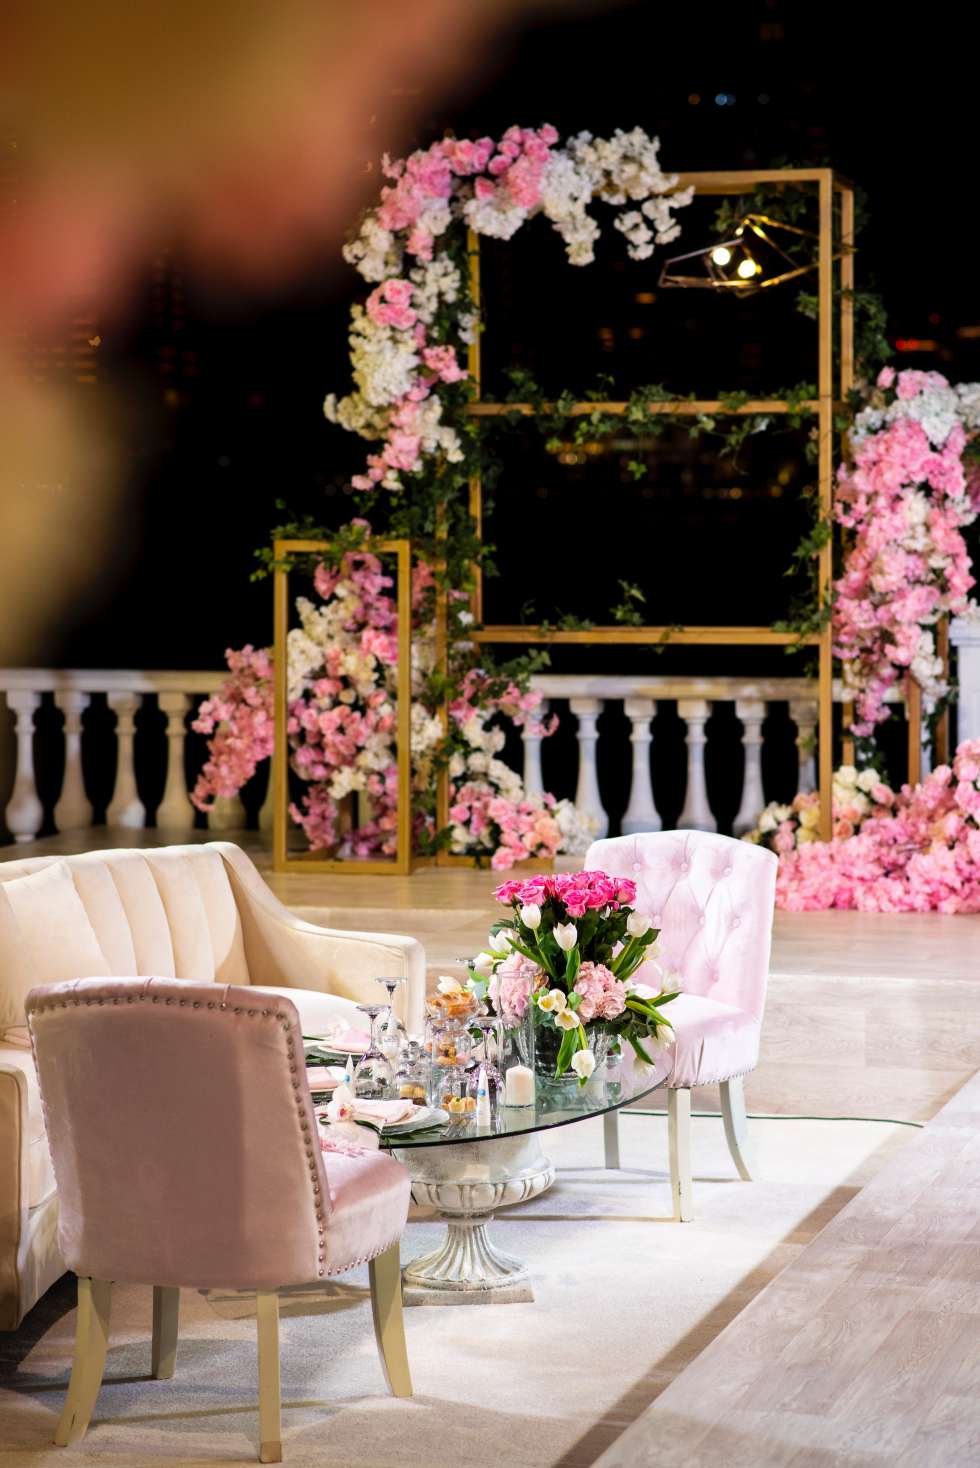 حفل زفاف باللون الوردي في قطر